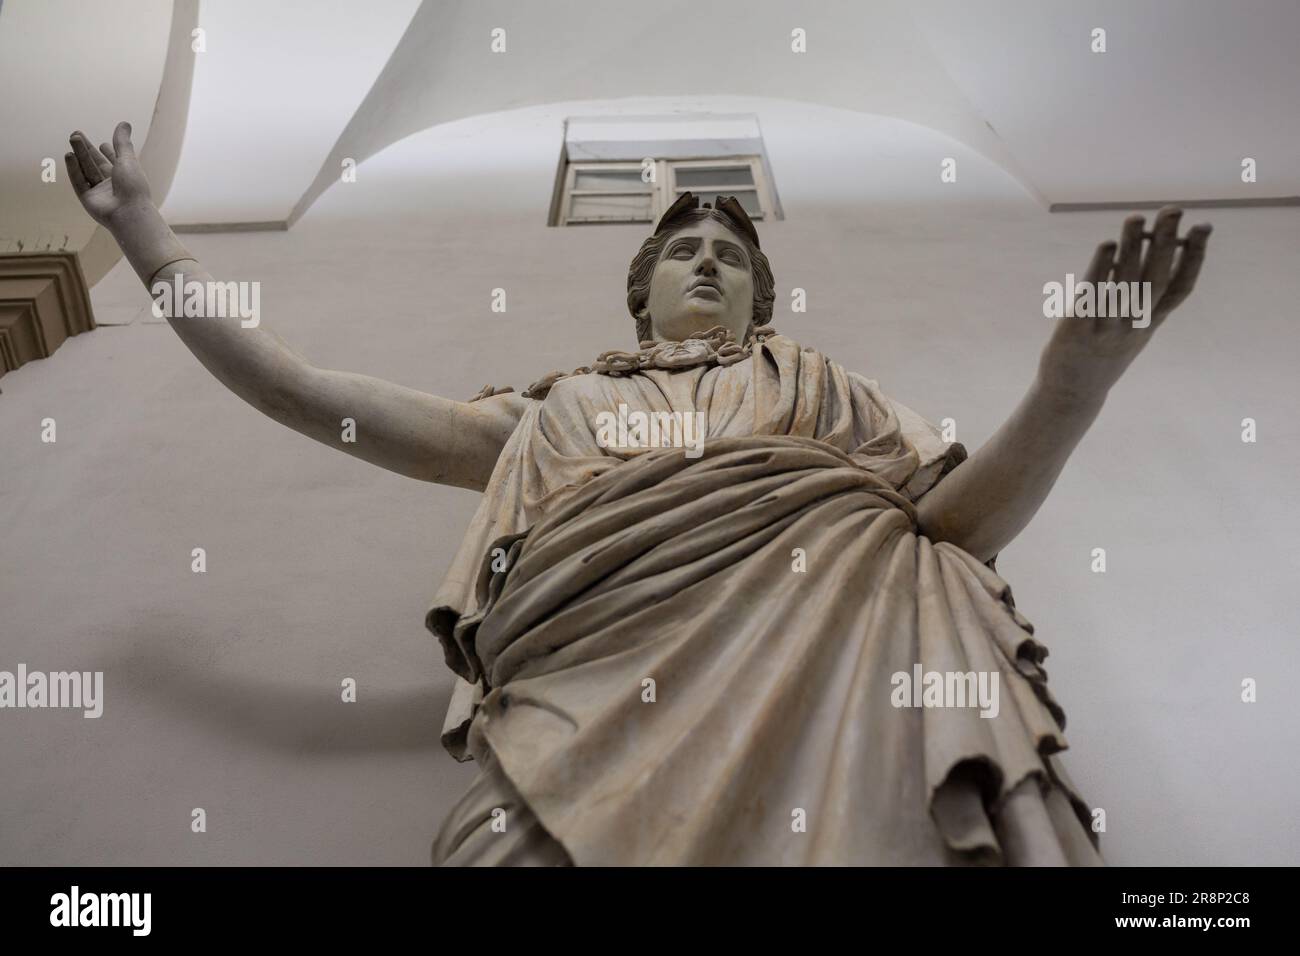 Antike griechisch-römische Statue der Göttin Athena oder Minerva, gott der Weisheit und die künstlerische historische Skulptur. Accademia di Belle Arti di Brera, Mailand Stockfoto